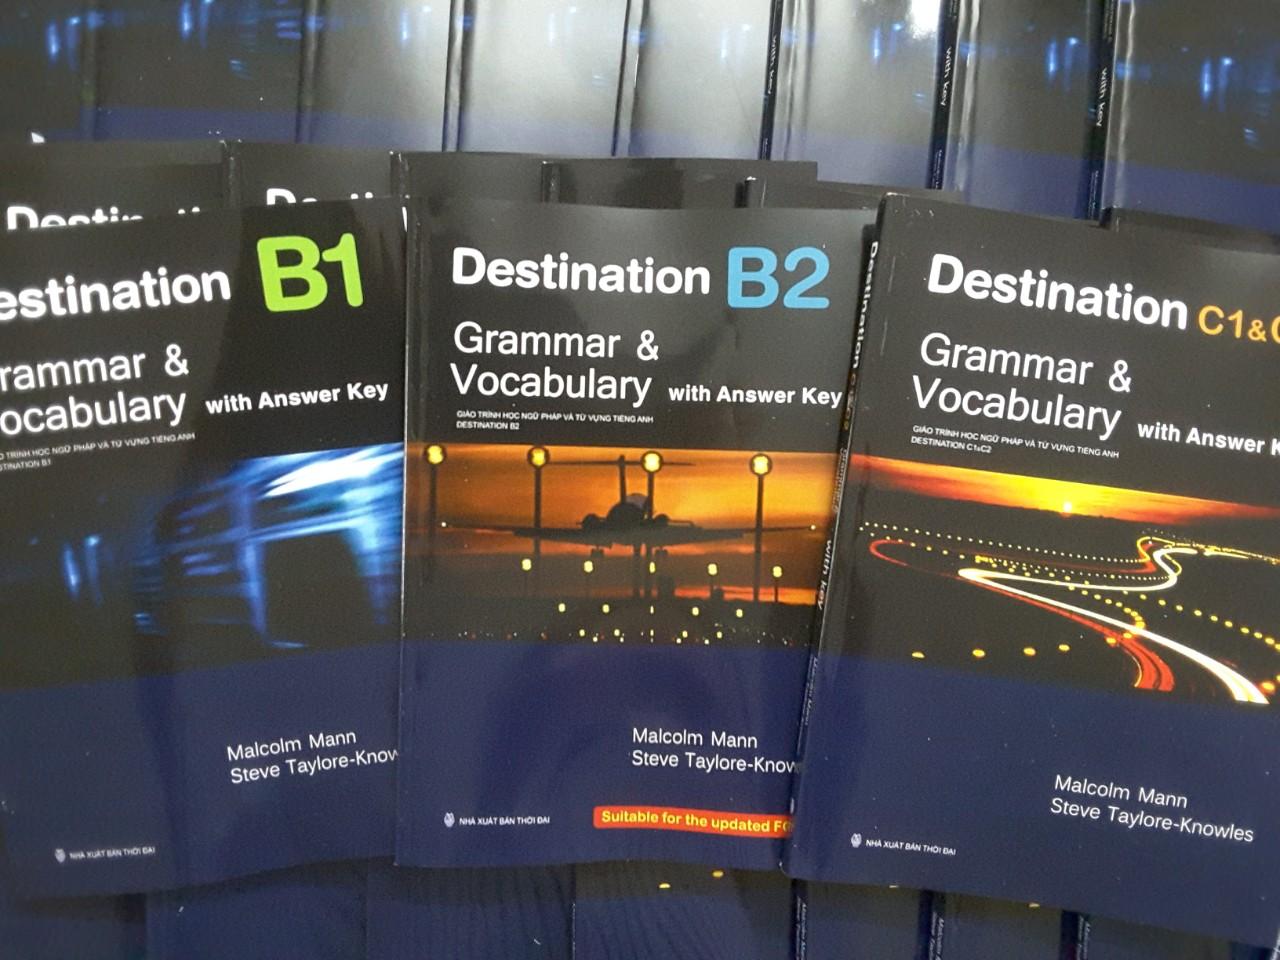 Destination B1, B2 và C1+C2